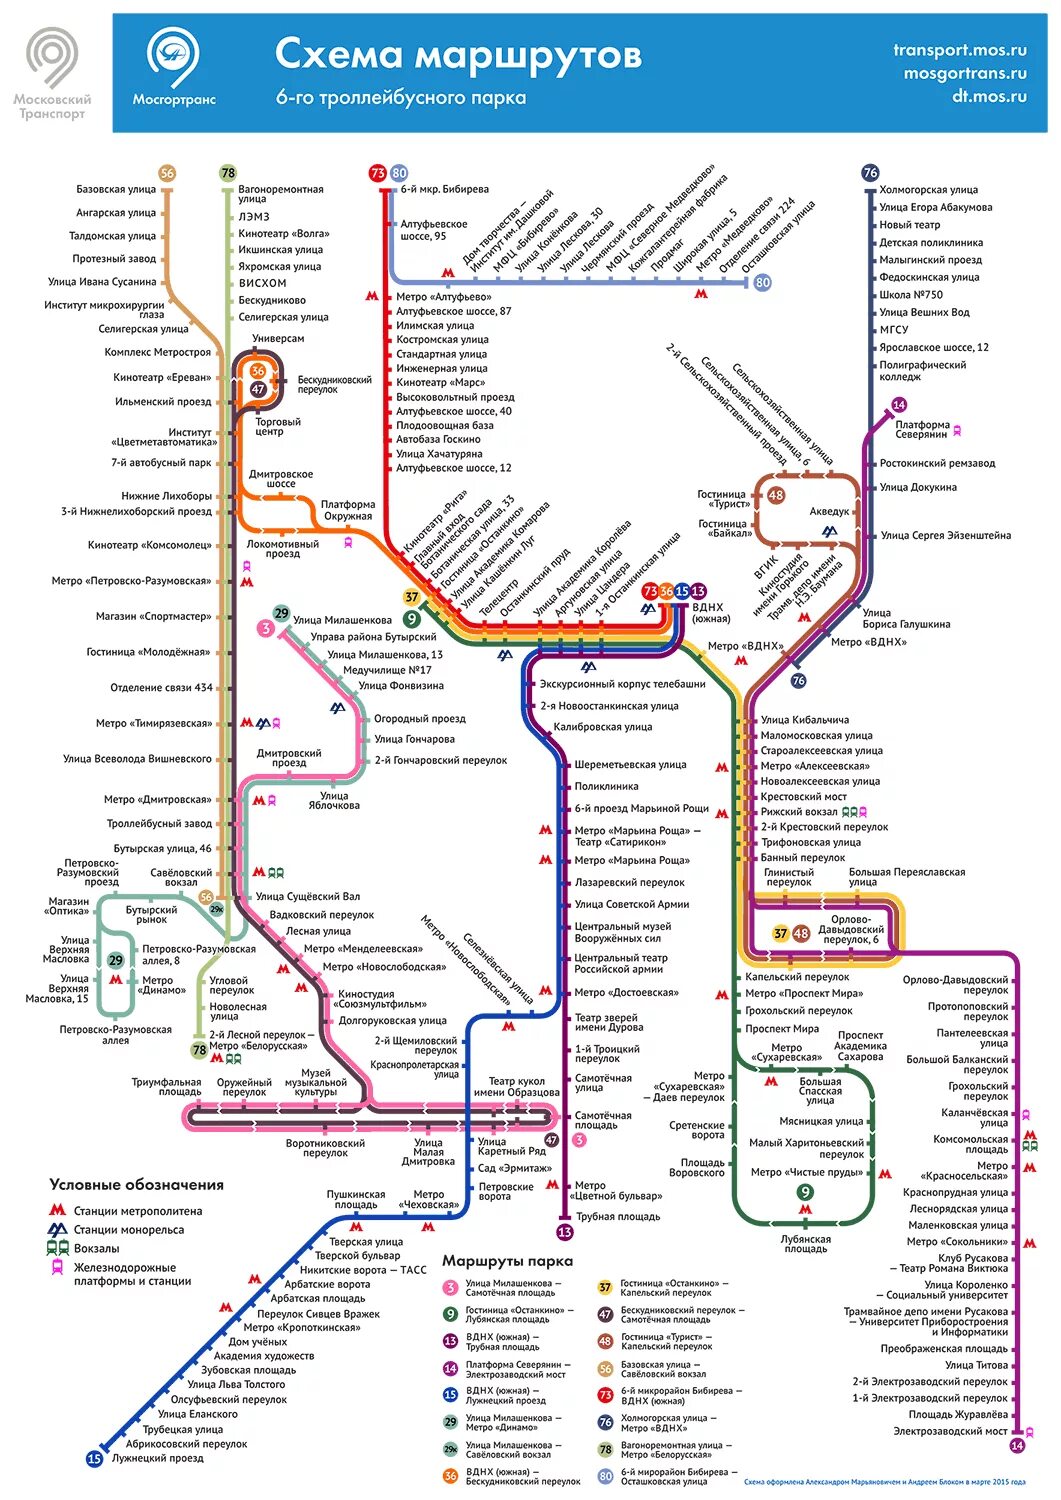 Схема маршрутов троллейбуса троллейбусный парк 1 СПБ. Схема маршрутов троллейбусов Москвы. Схема маршрутов троллейбусов 7 троллейбусного парка Москва. Схема маршрутов 2 троллейбусного парка Москвы. Карта движения троллейбусов